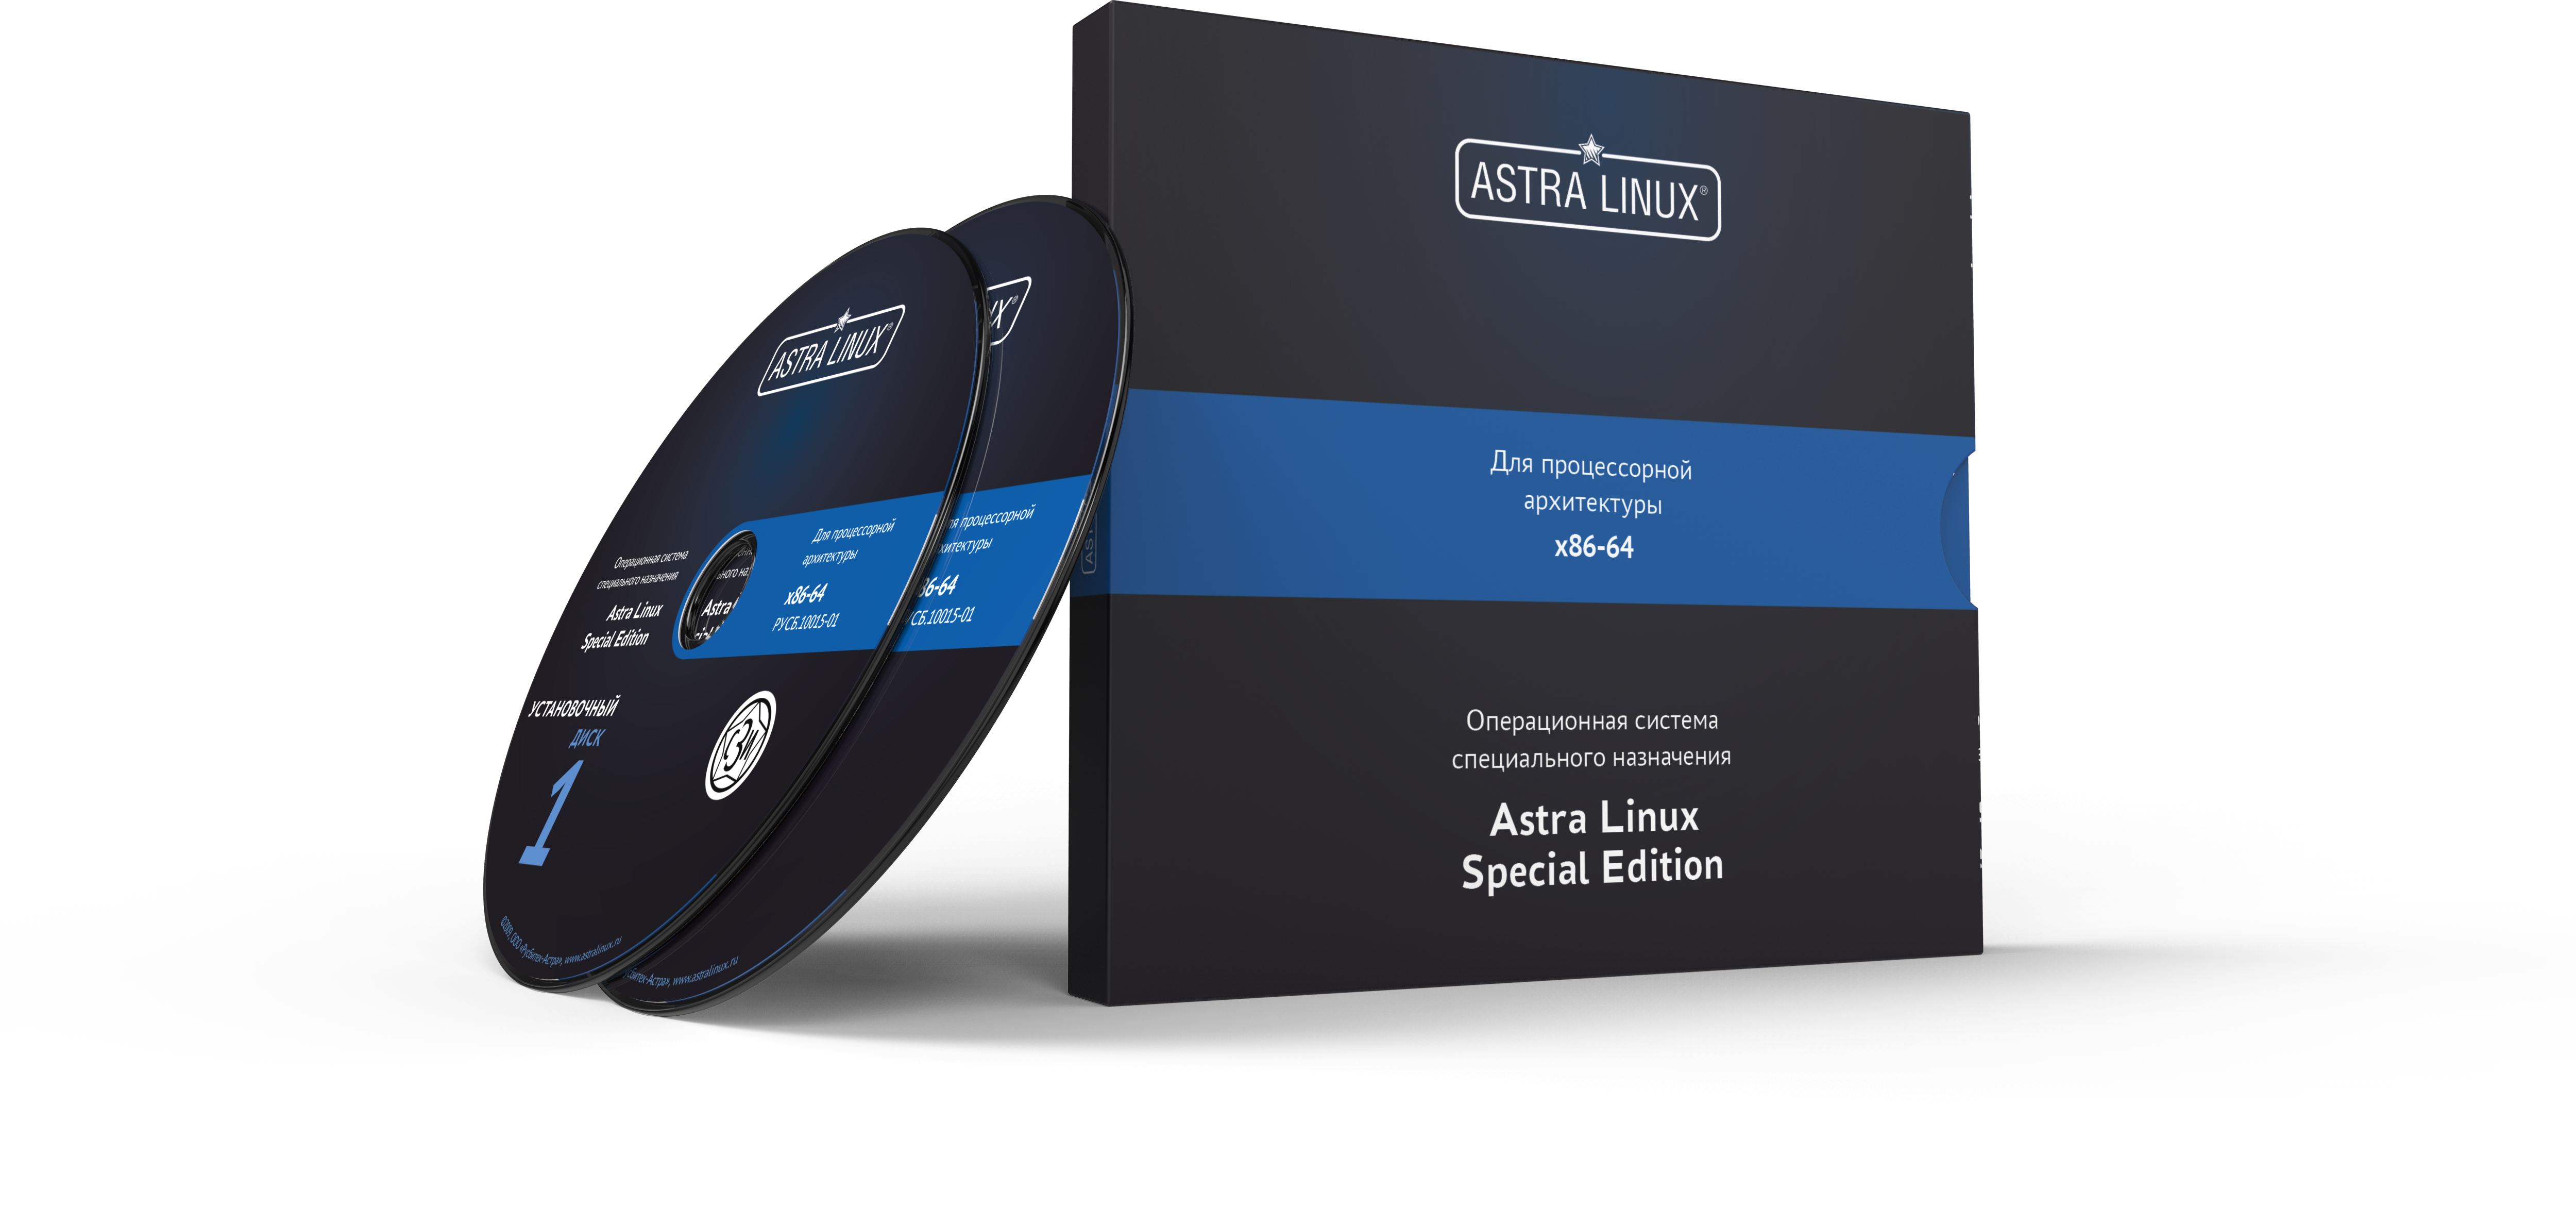 Astra Linux Special Edition 1.7 - Смоленск, ФСТЭК, "Максимальный", диск, на 12 мес., ТП "Привилегированная" на 12 мес.